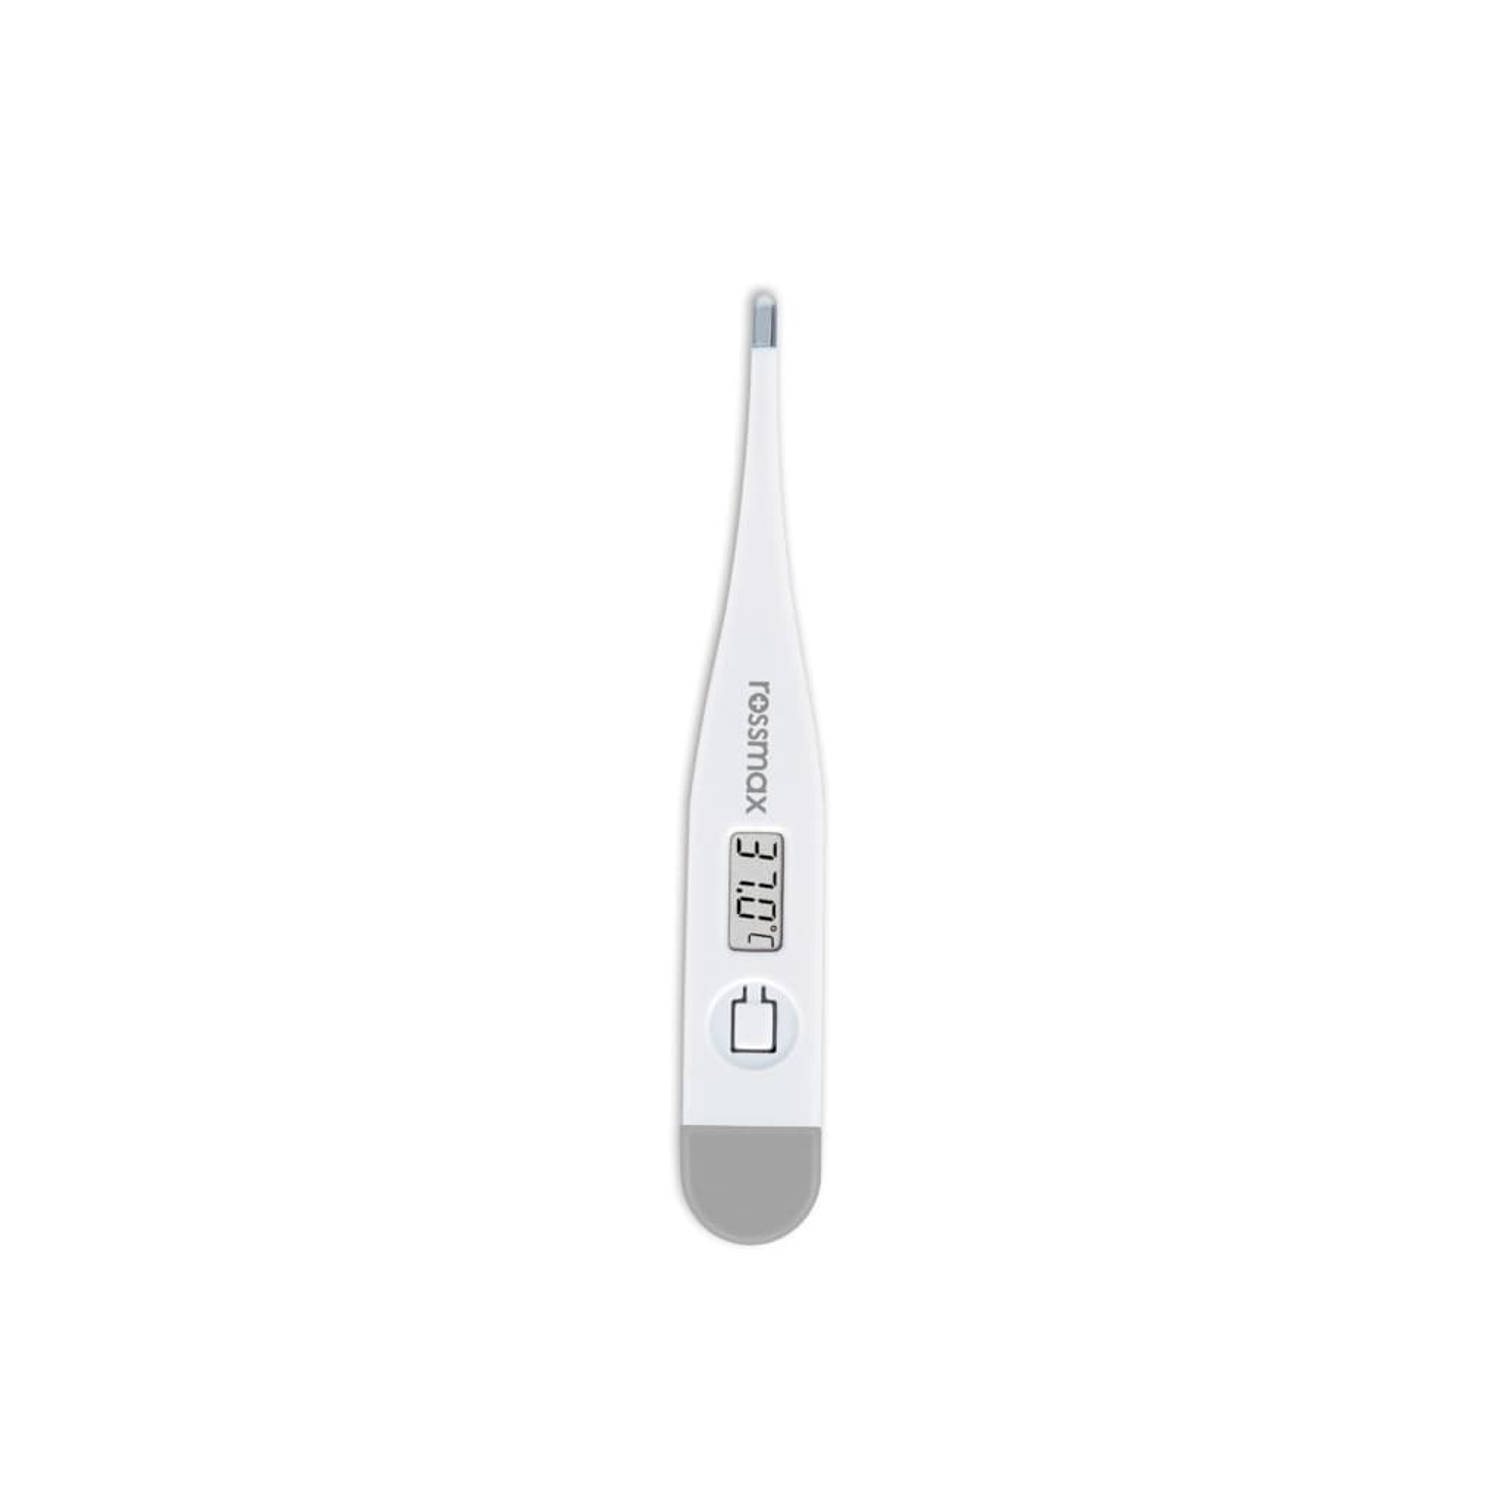 Rossmax TG100 - Thermometer Lichaam - Koortsthermometer voor Baby’s, Kinderen en Volwassenen - Zeer Nauwkeurig - Koortsalarm - Digitaal - Temperatuur meten via Oksel, Mond of Recta